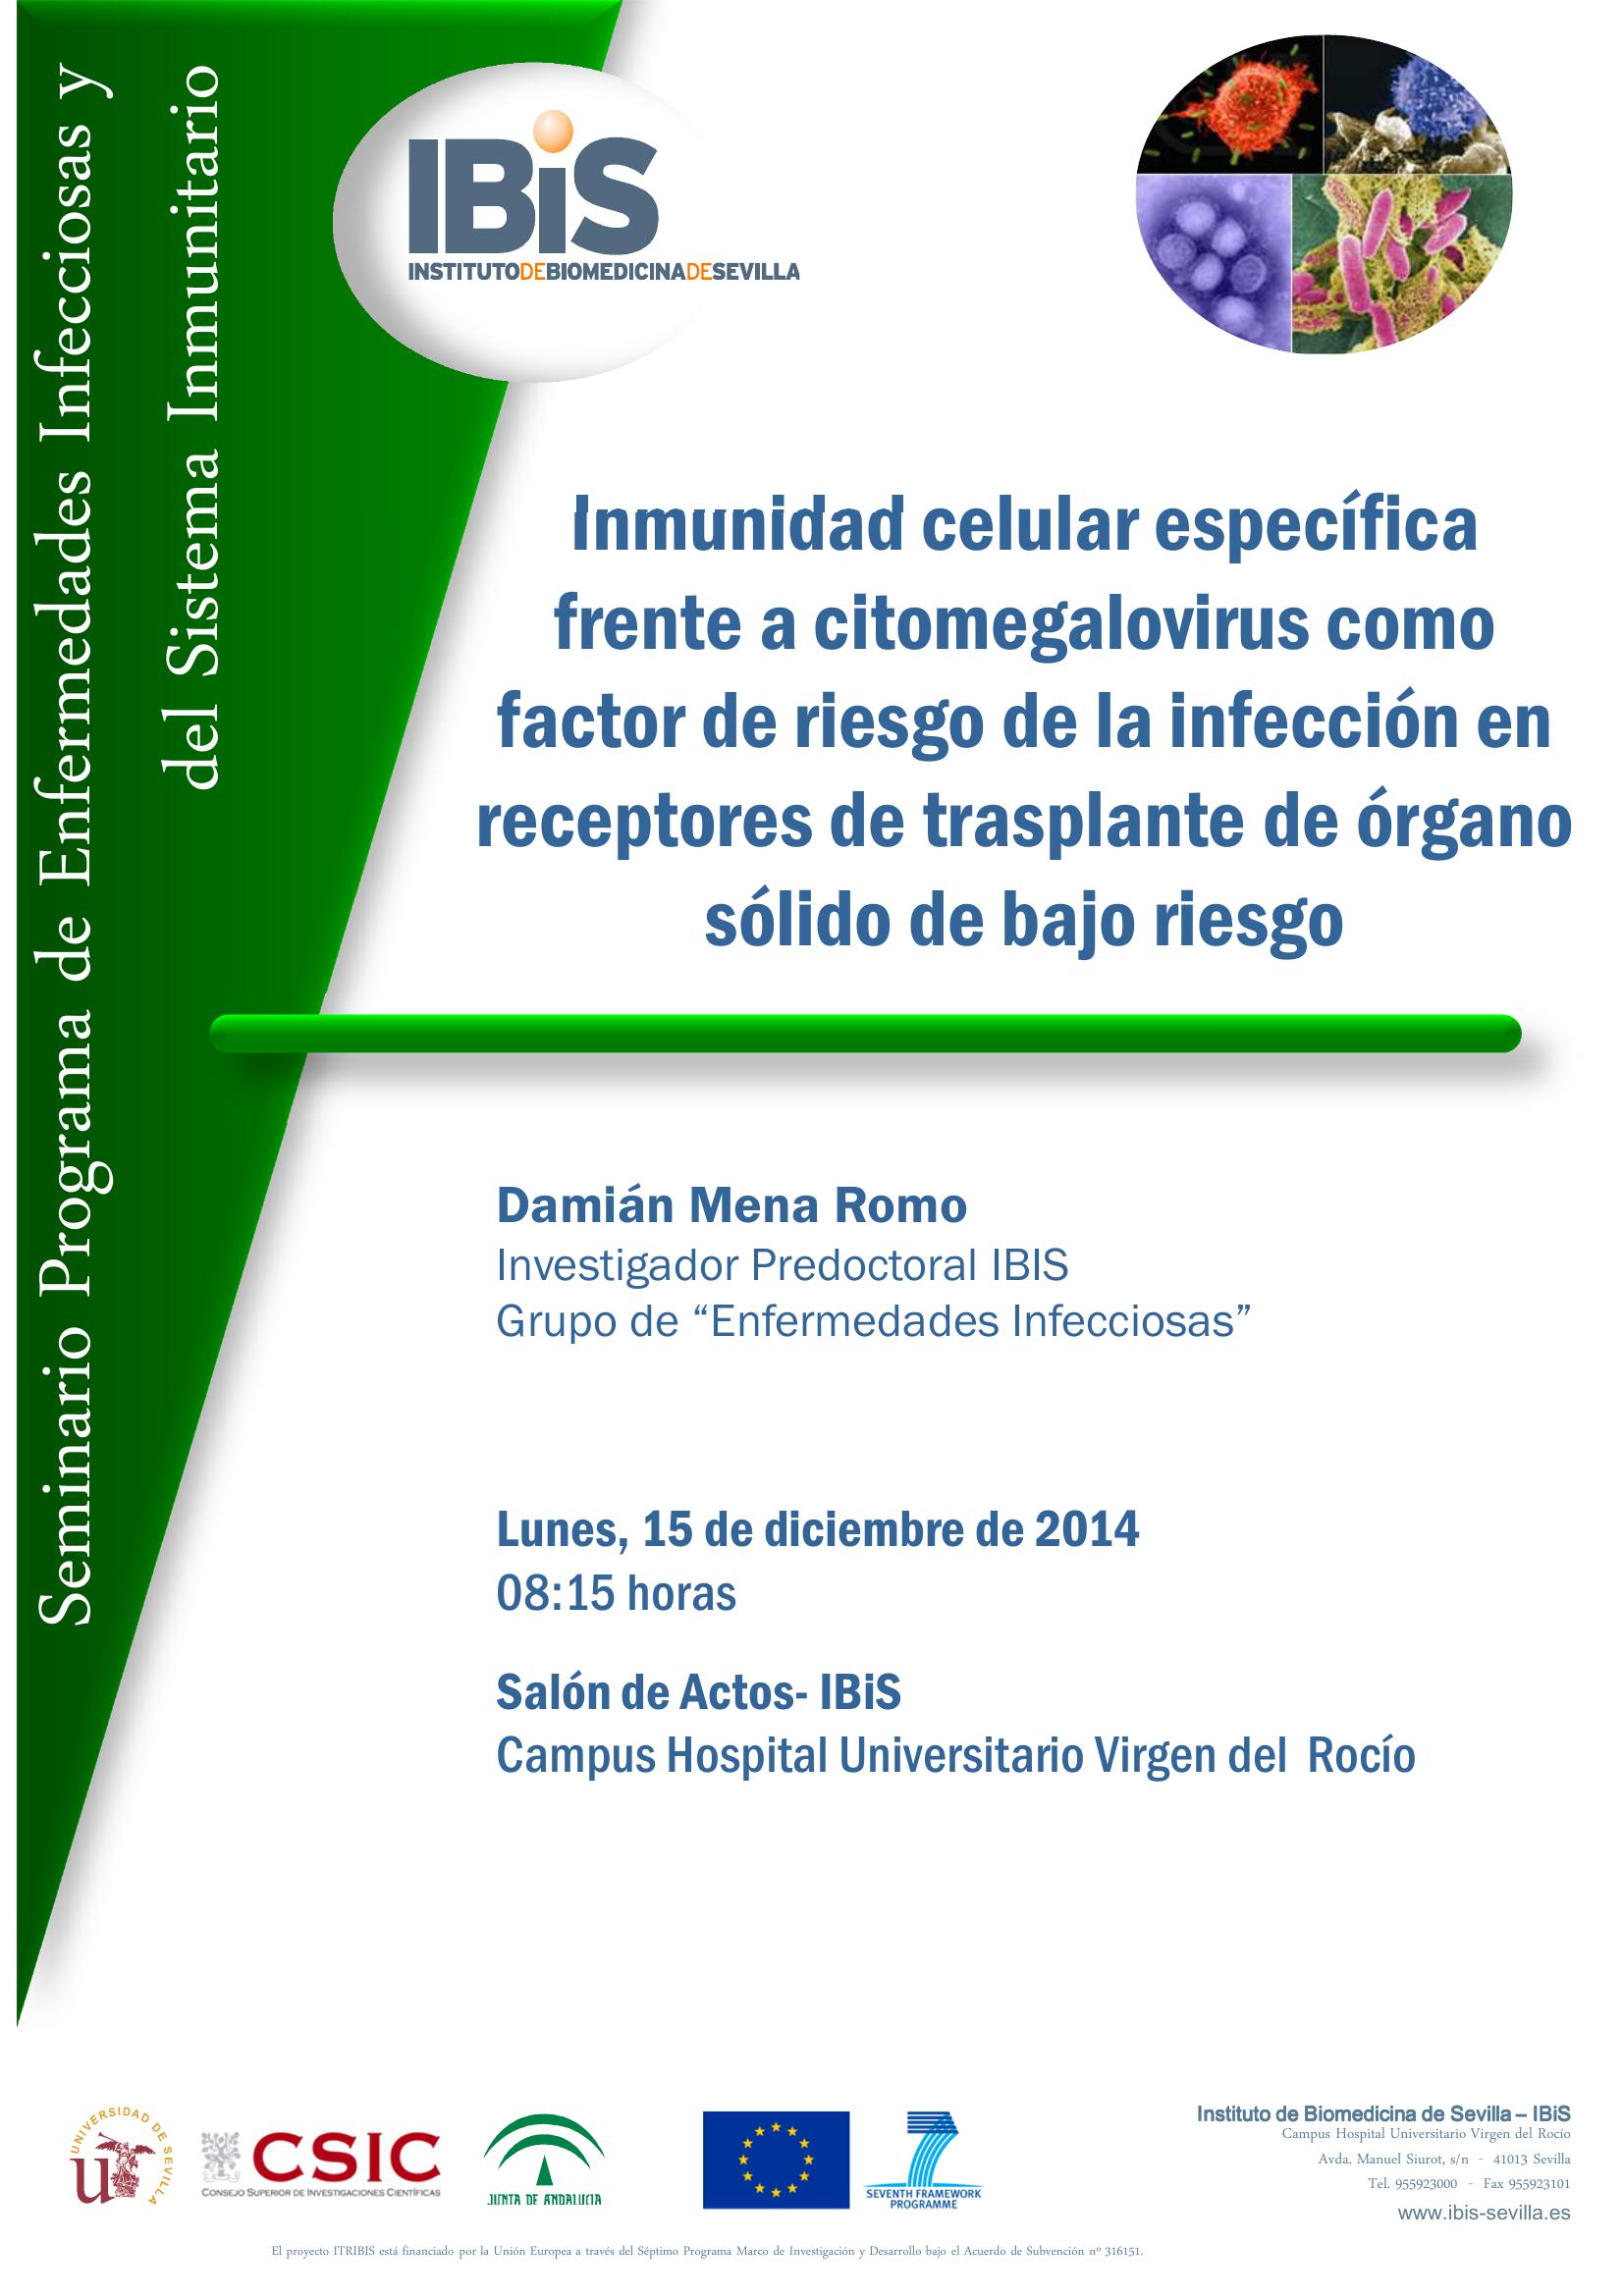 Poster: Inmunidad celular específica frente a citomegalovirus como factor de riesgo de la infección en receptores de trasplante de órgano sólido de bajo riesgo